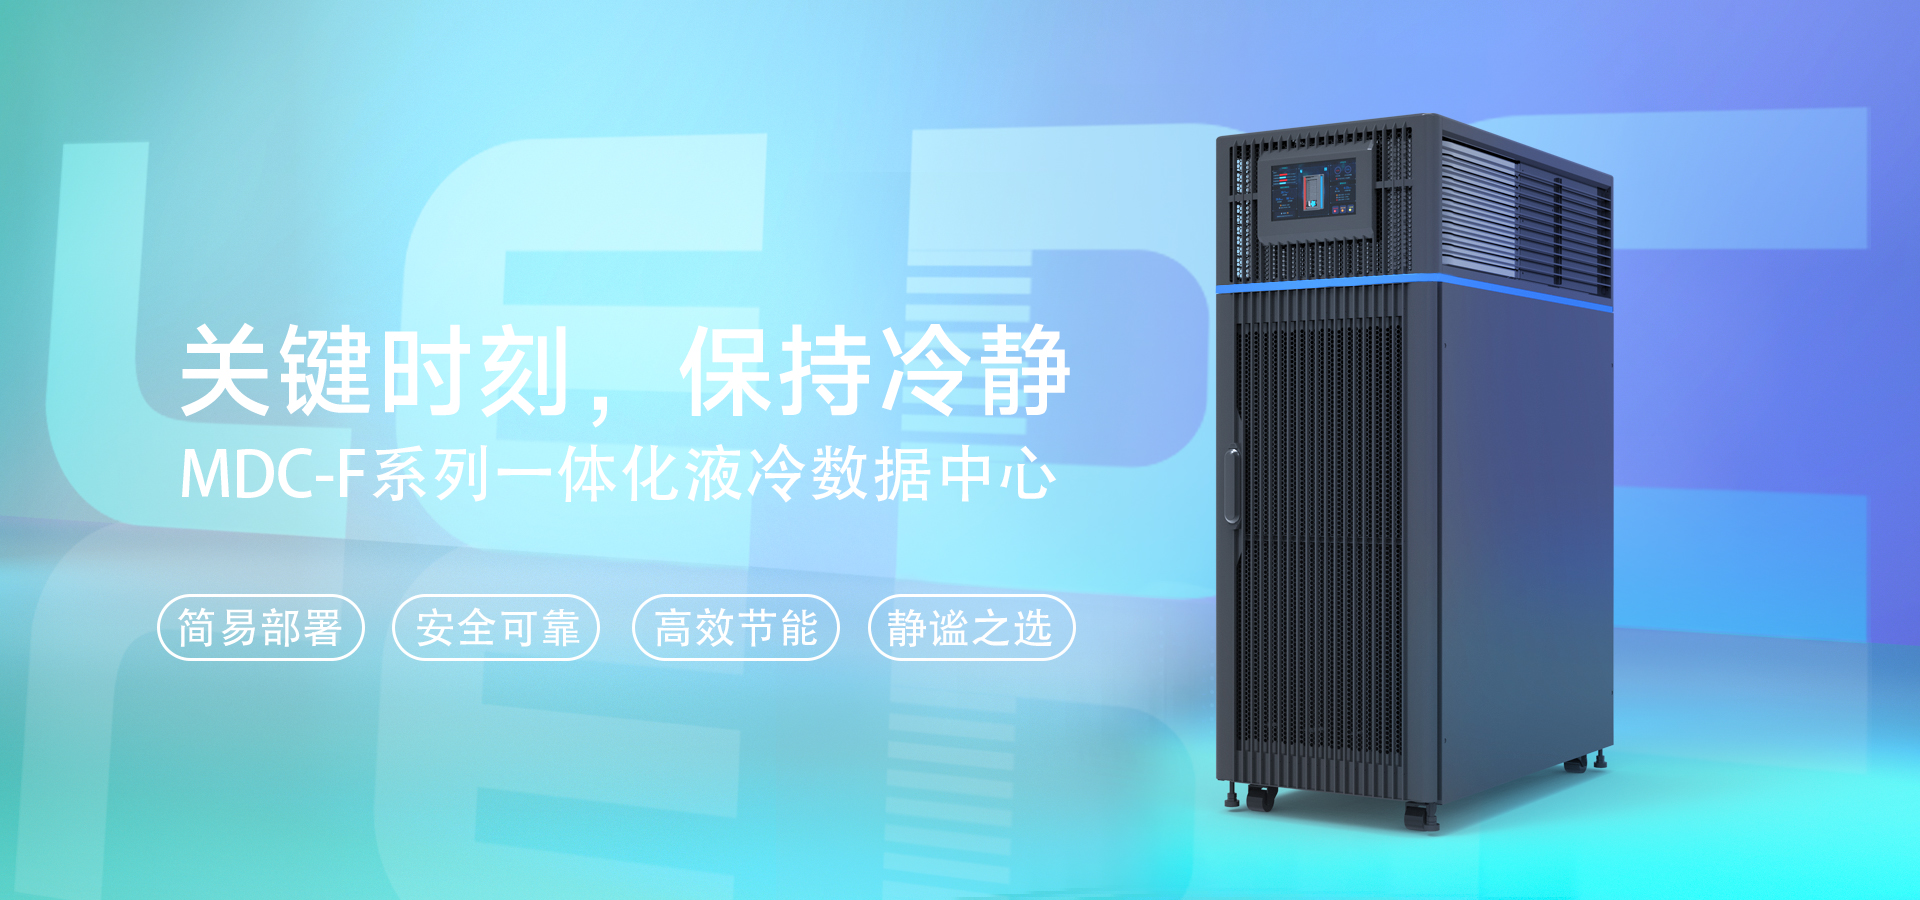 MDC-F 一体化液冷机柜系统